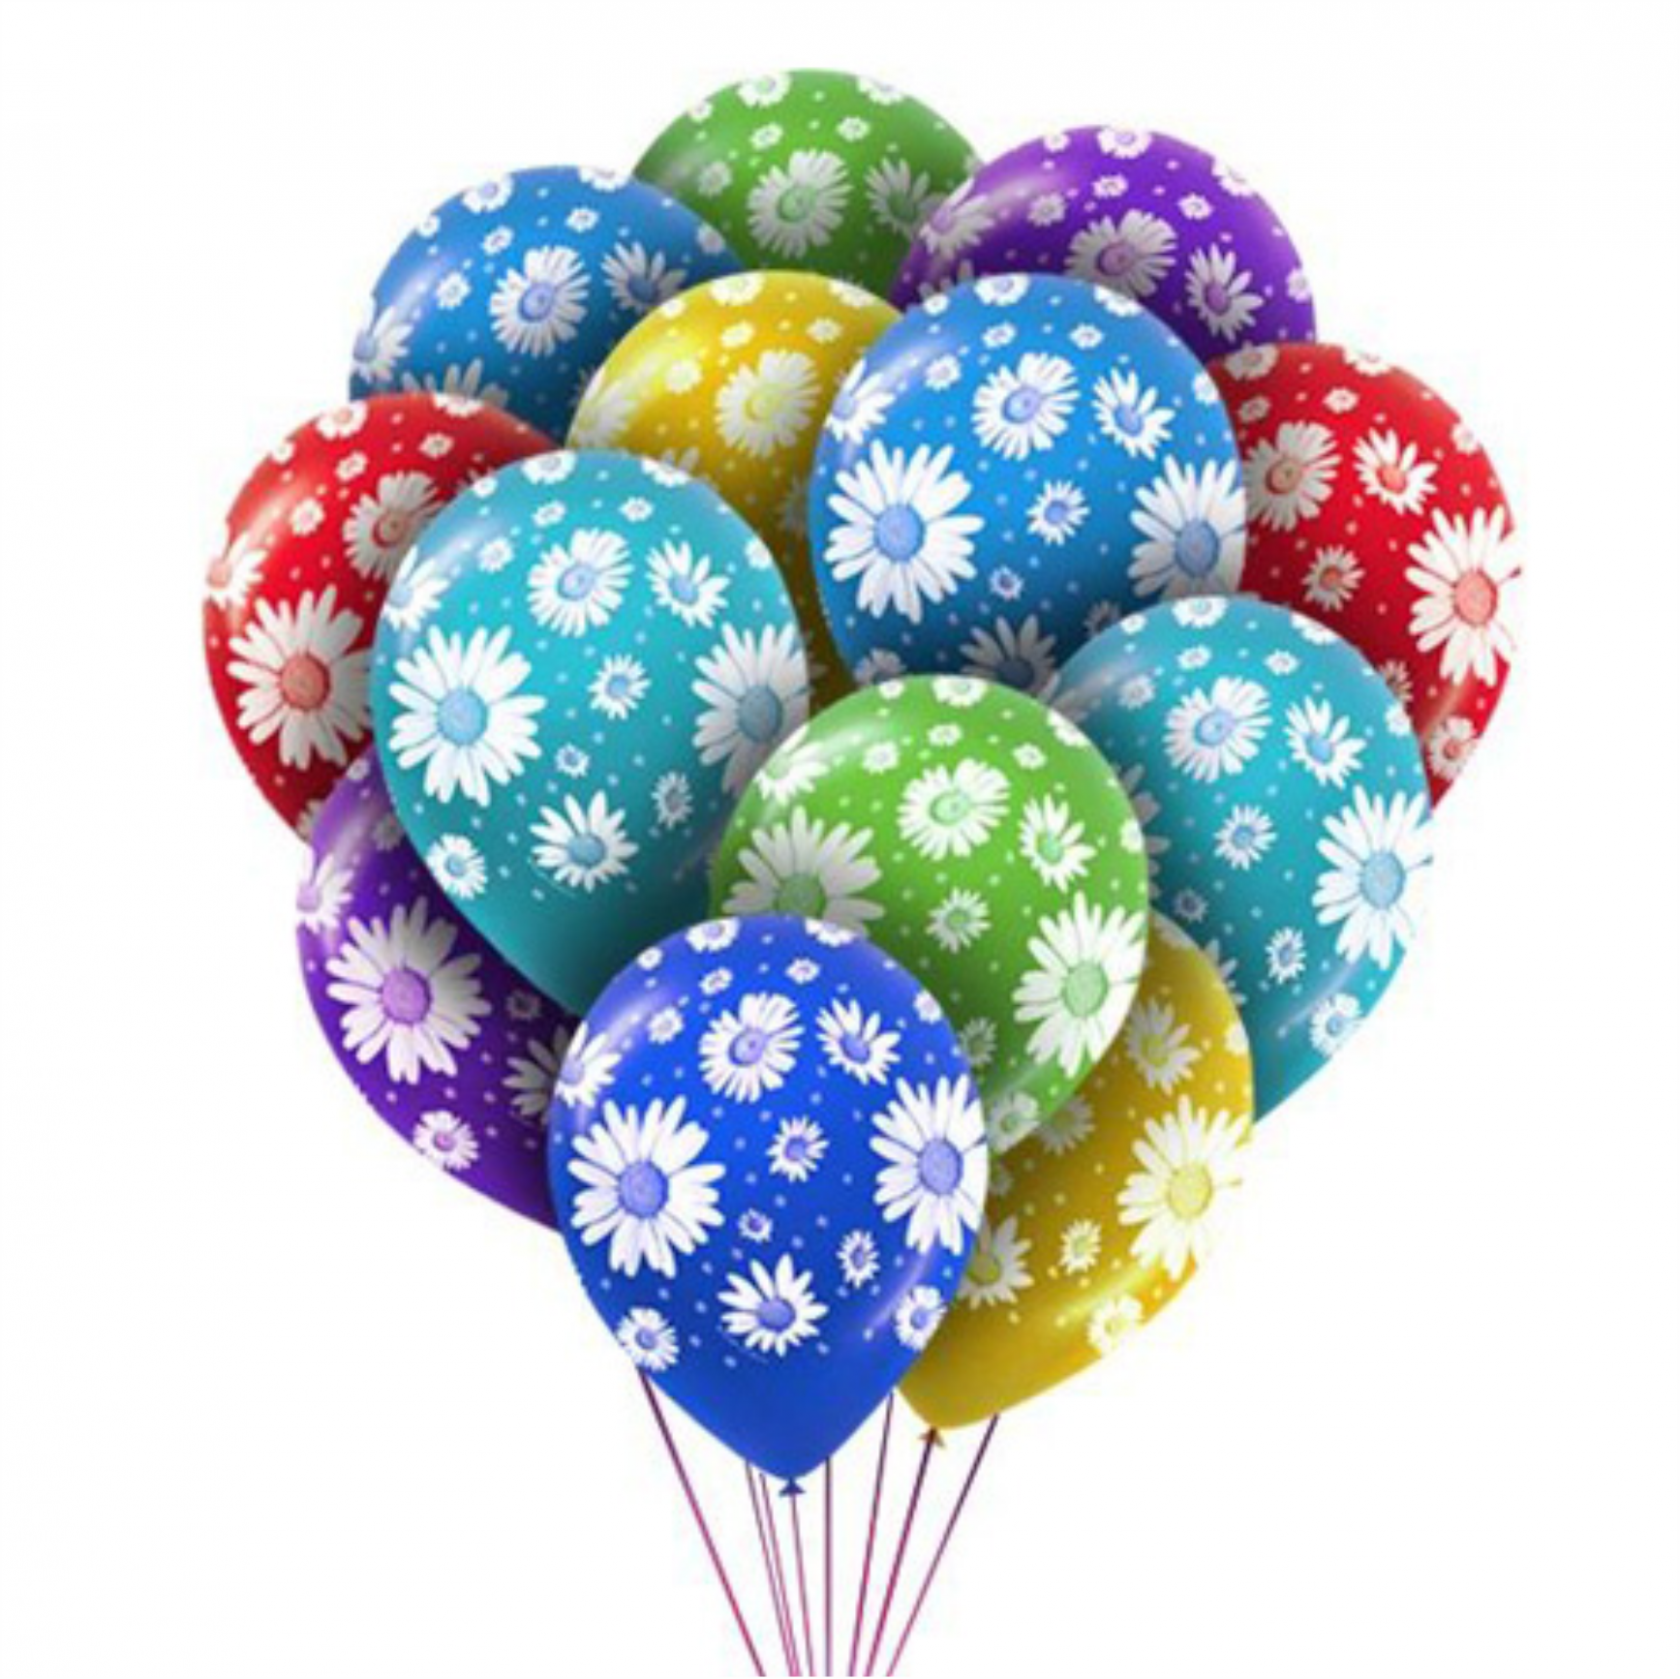 Цветные шары. Воздушные шары. Разноцветные шарики воздушные. Шары надувные. Шарики воздушные купить недорого